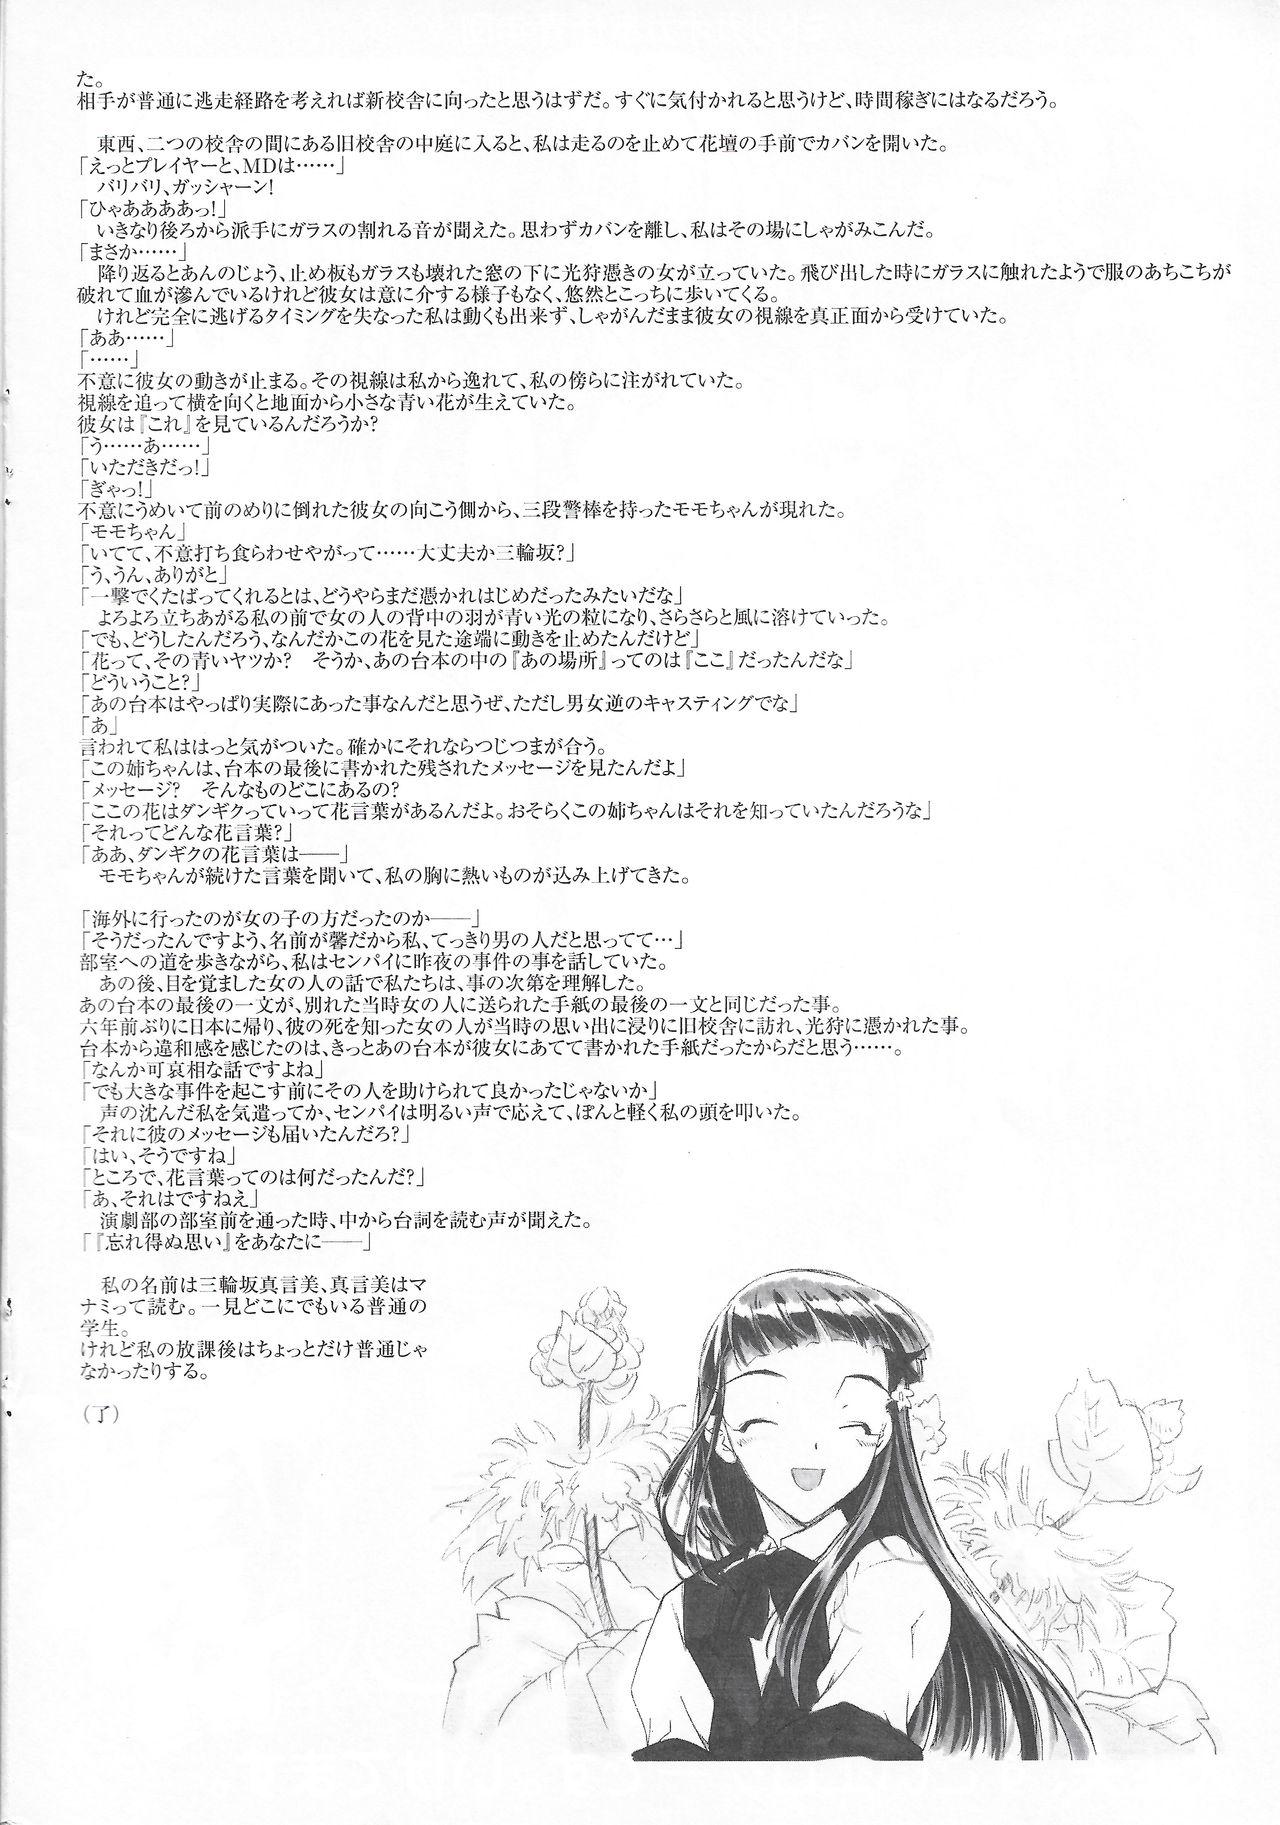 Arisu no Denchi Bakudan Vol. 17 7